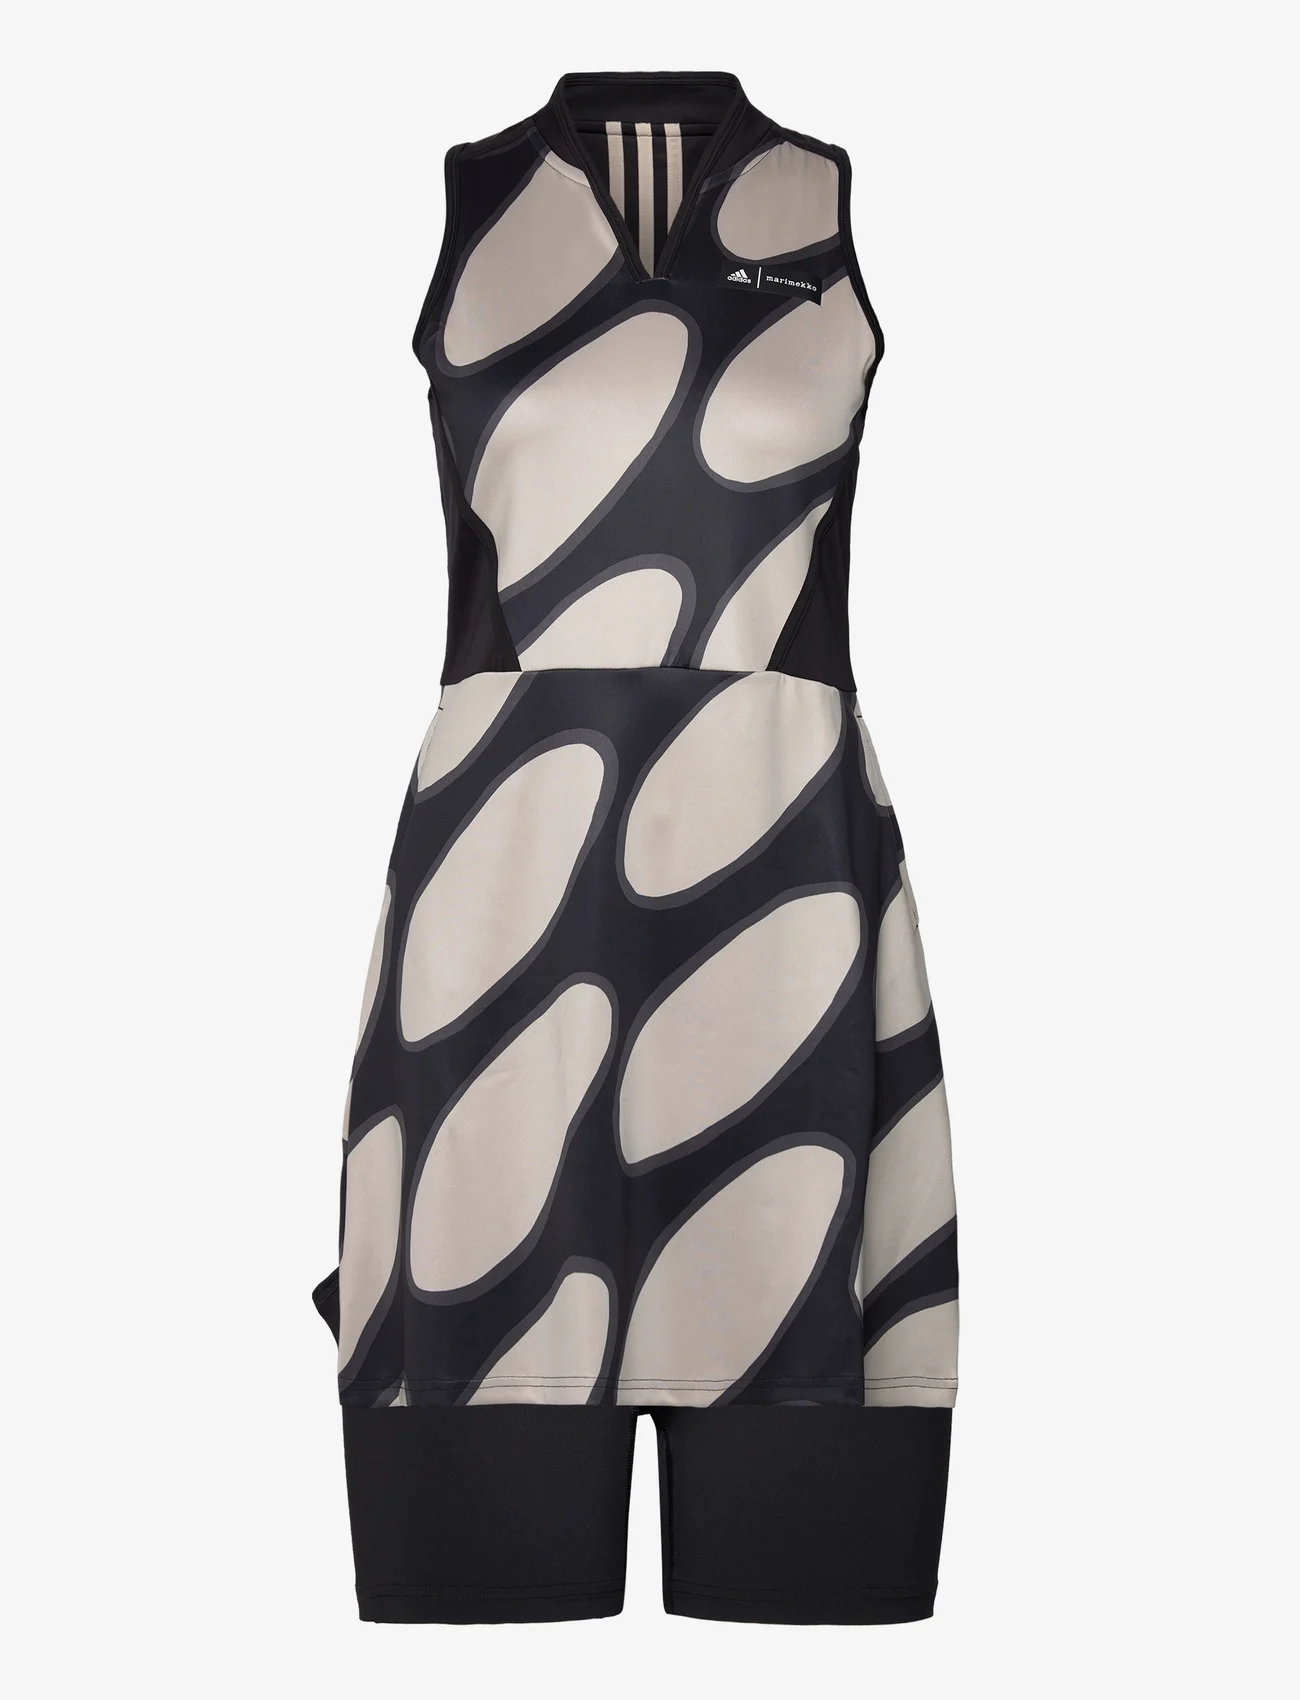 adidas Golf - Marimekko Dress - sportieve jurken - black - 0